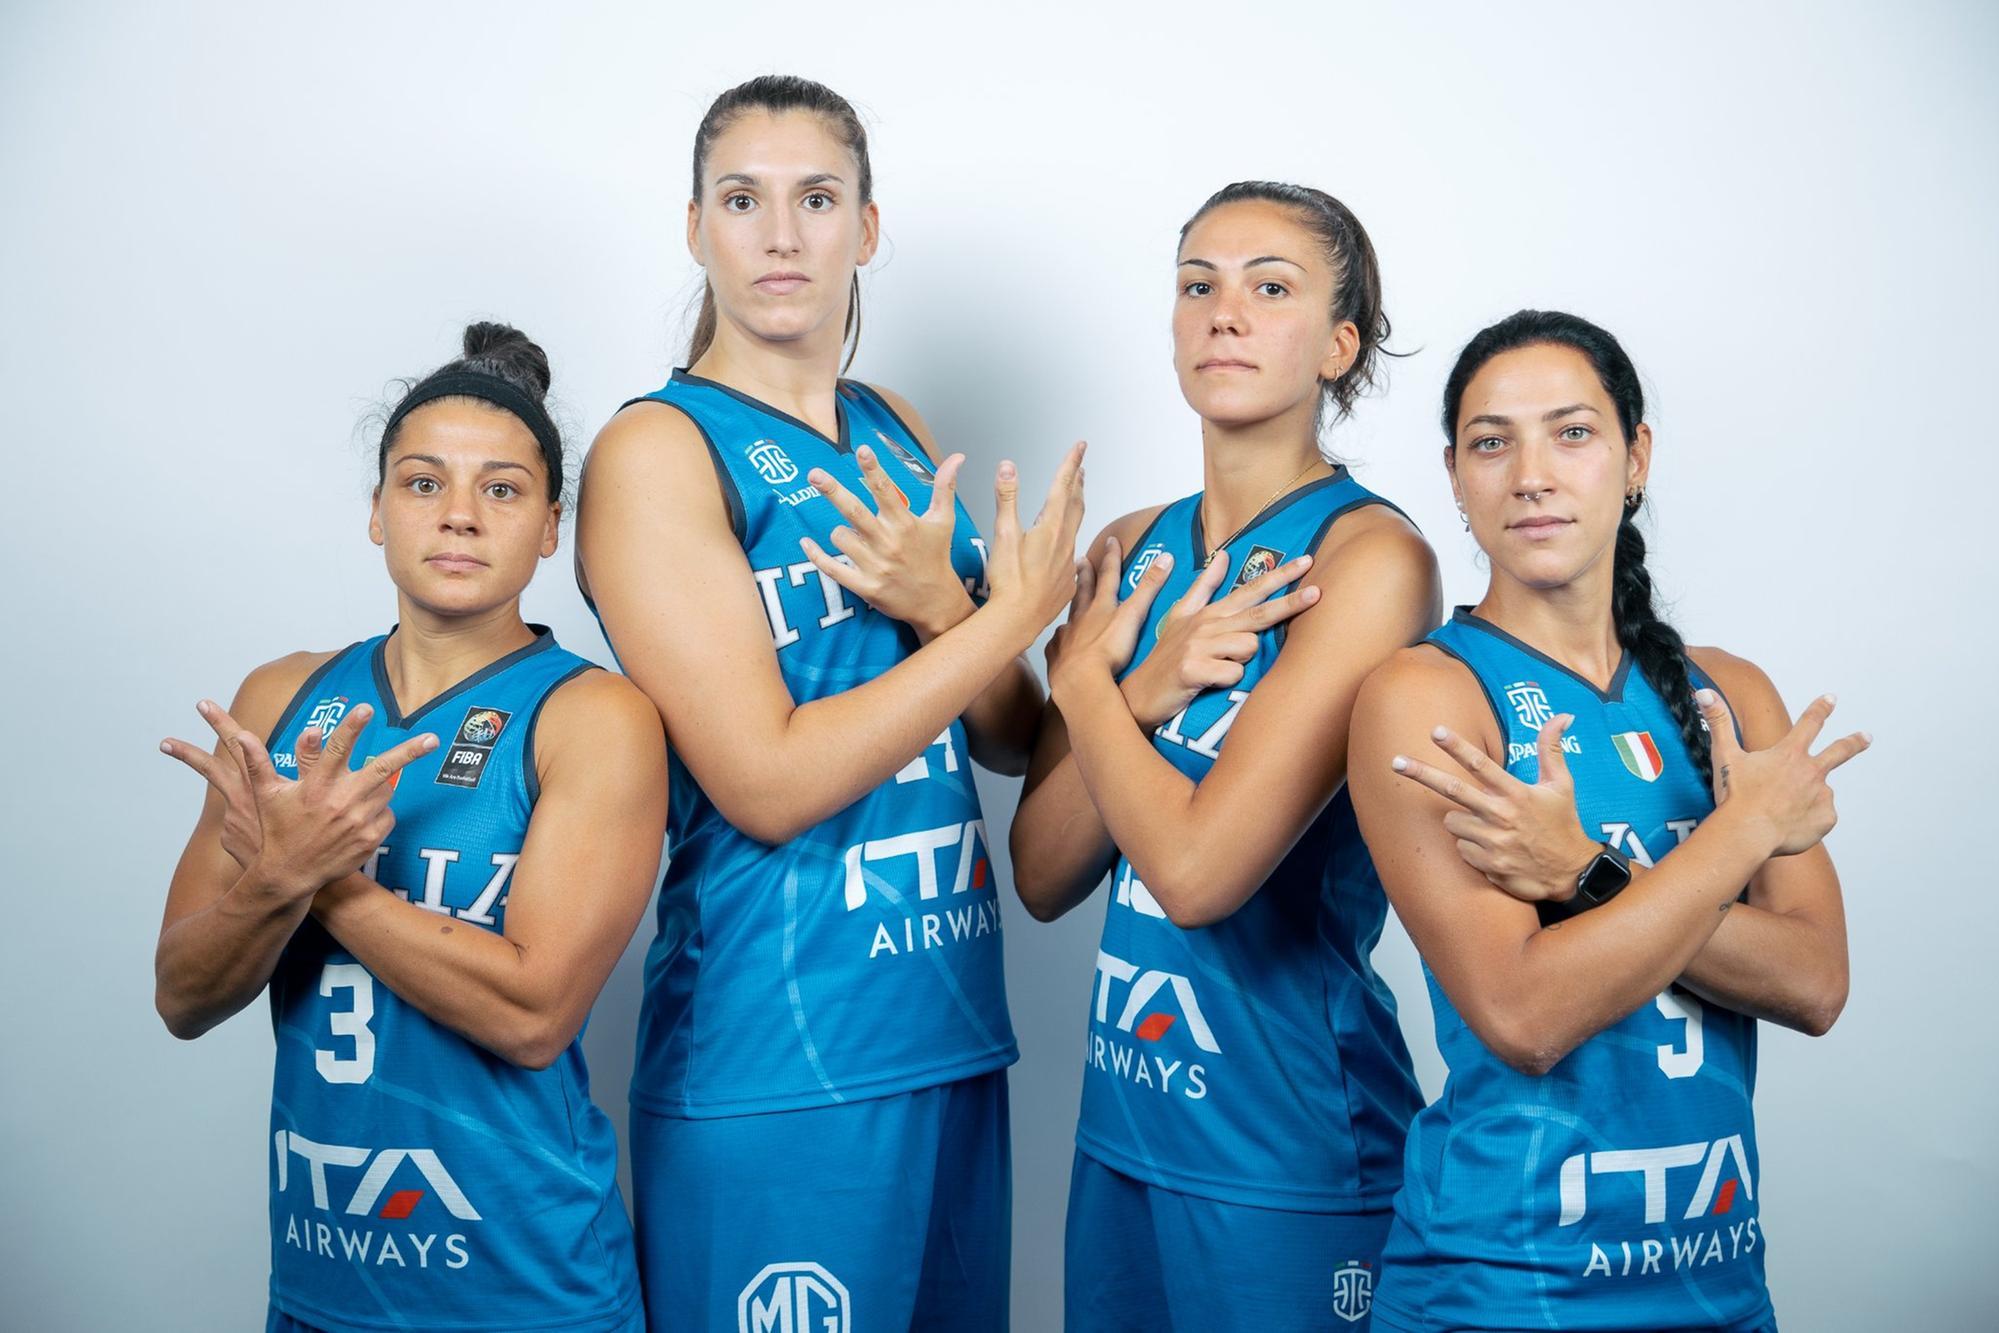 Nelle Women’s series di 3x3 argento per la Nazionale con il play della Dinamo Carangelo